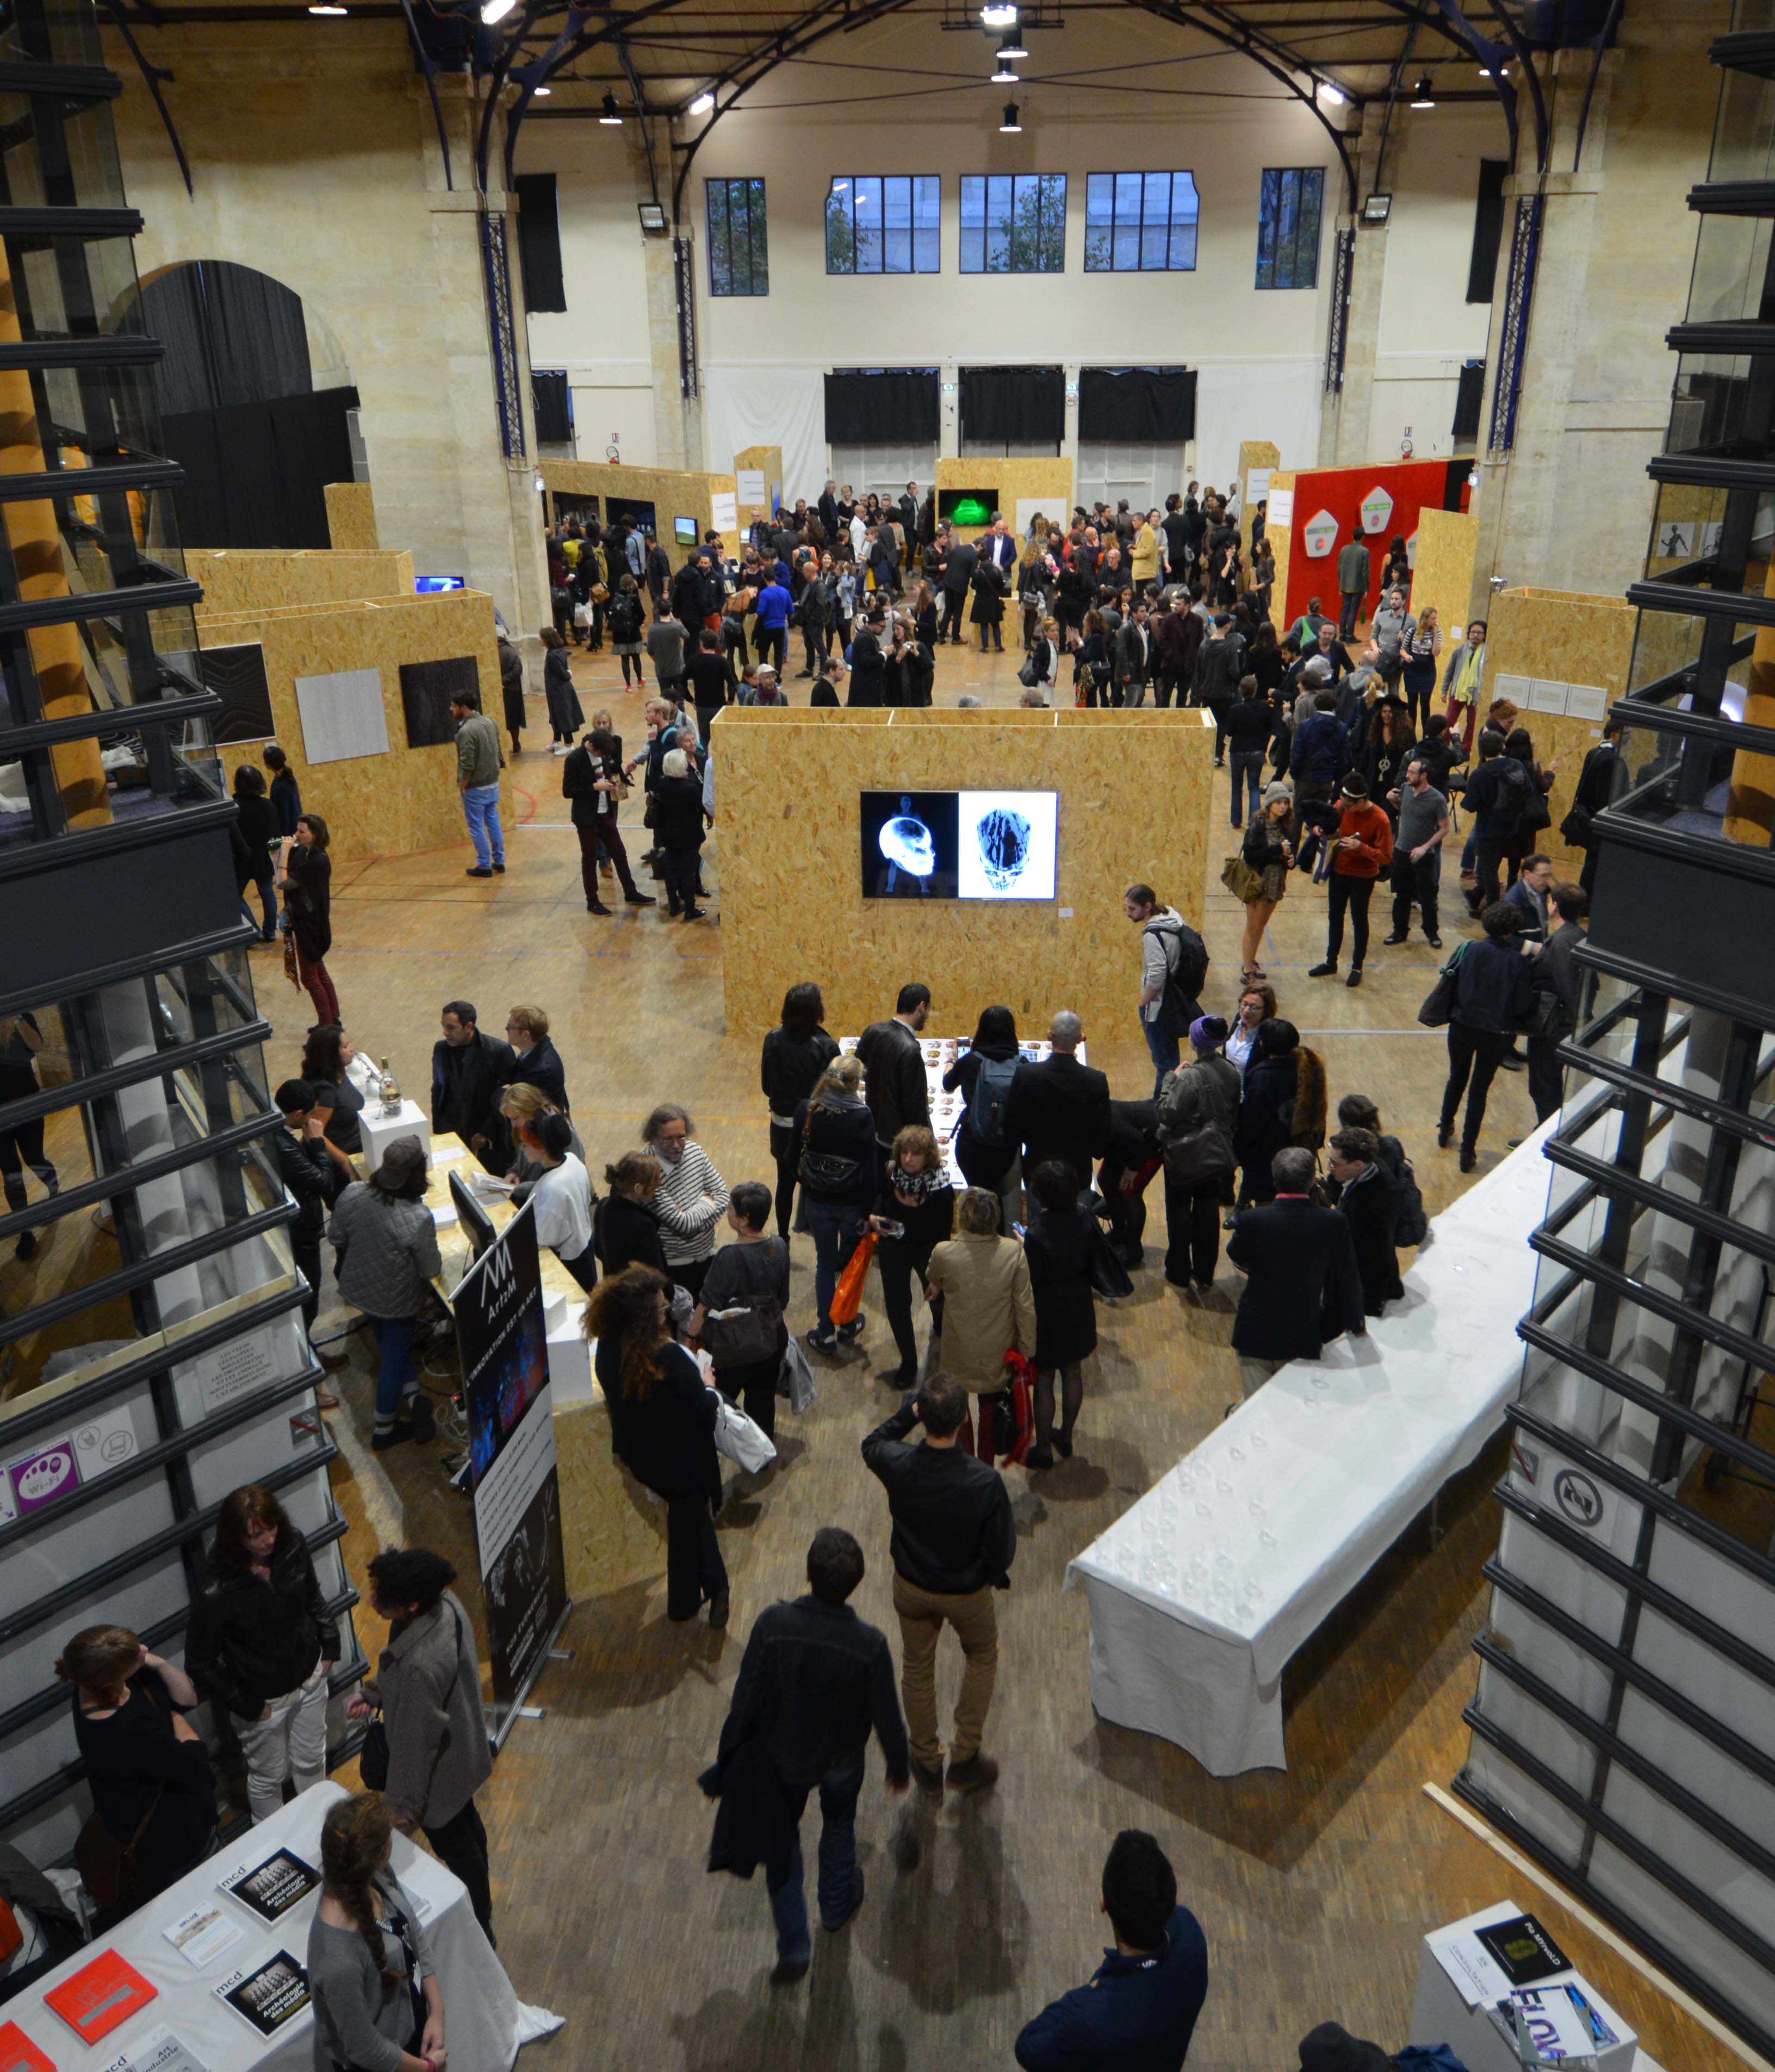 Show Off 2014 – The Digital Art Fair. France